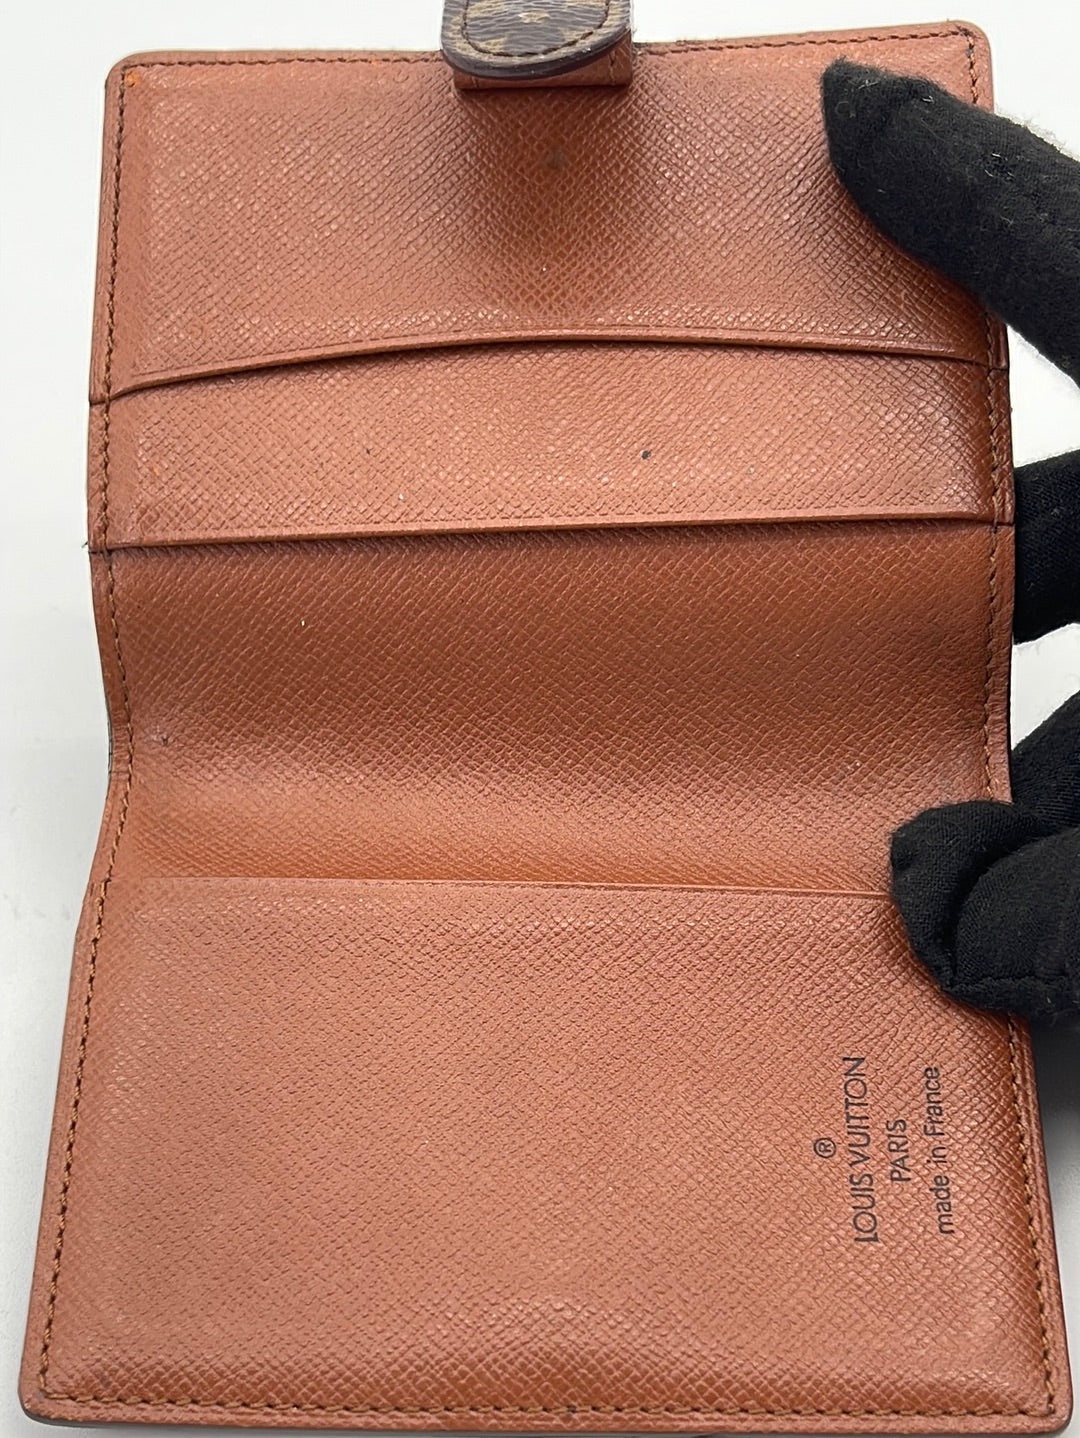 Original Louis Vuitton Agenda Einlage A6, € 260,- (3062 Doppel